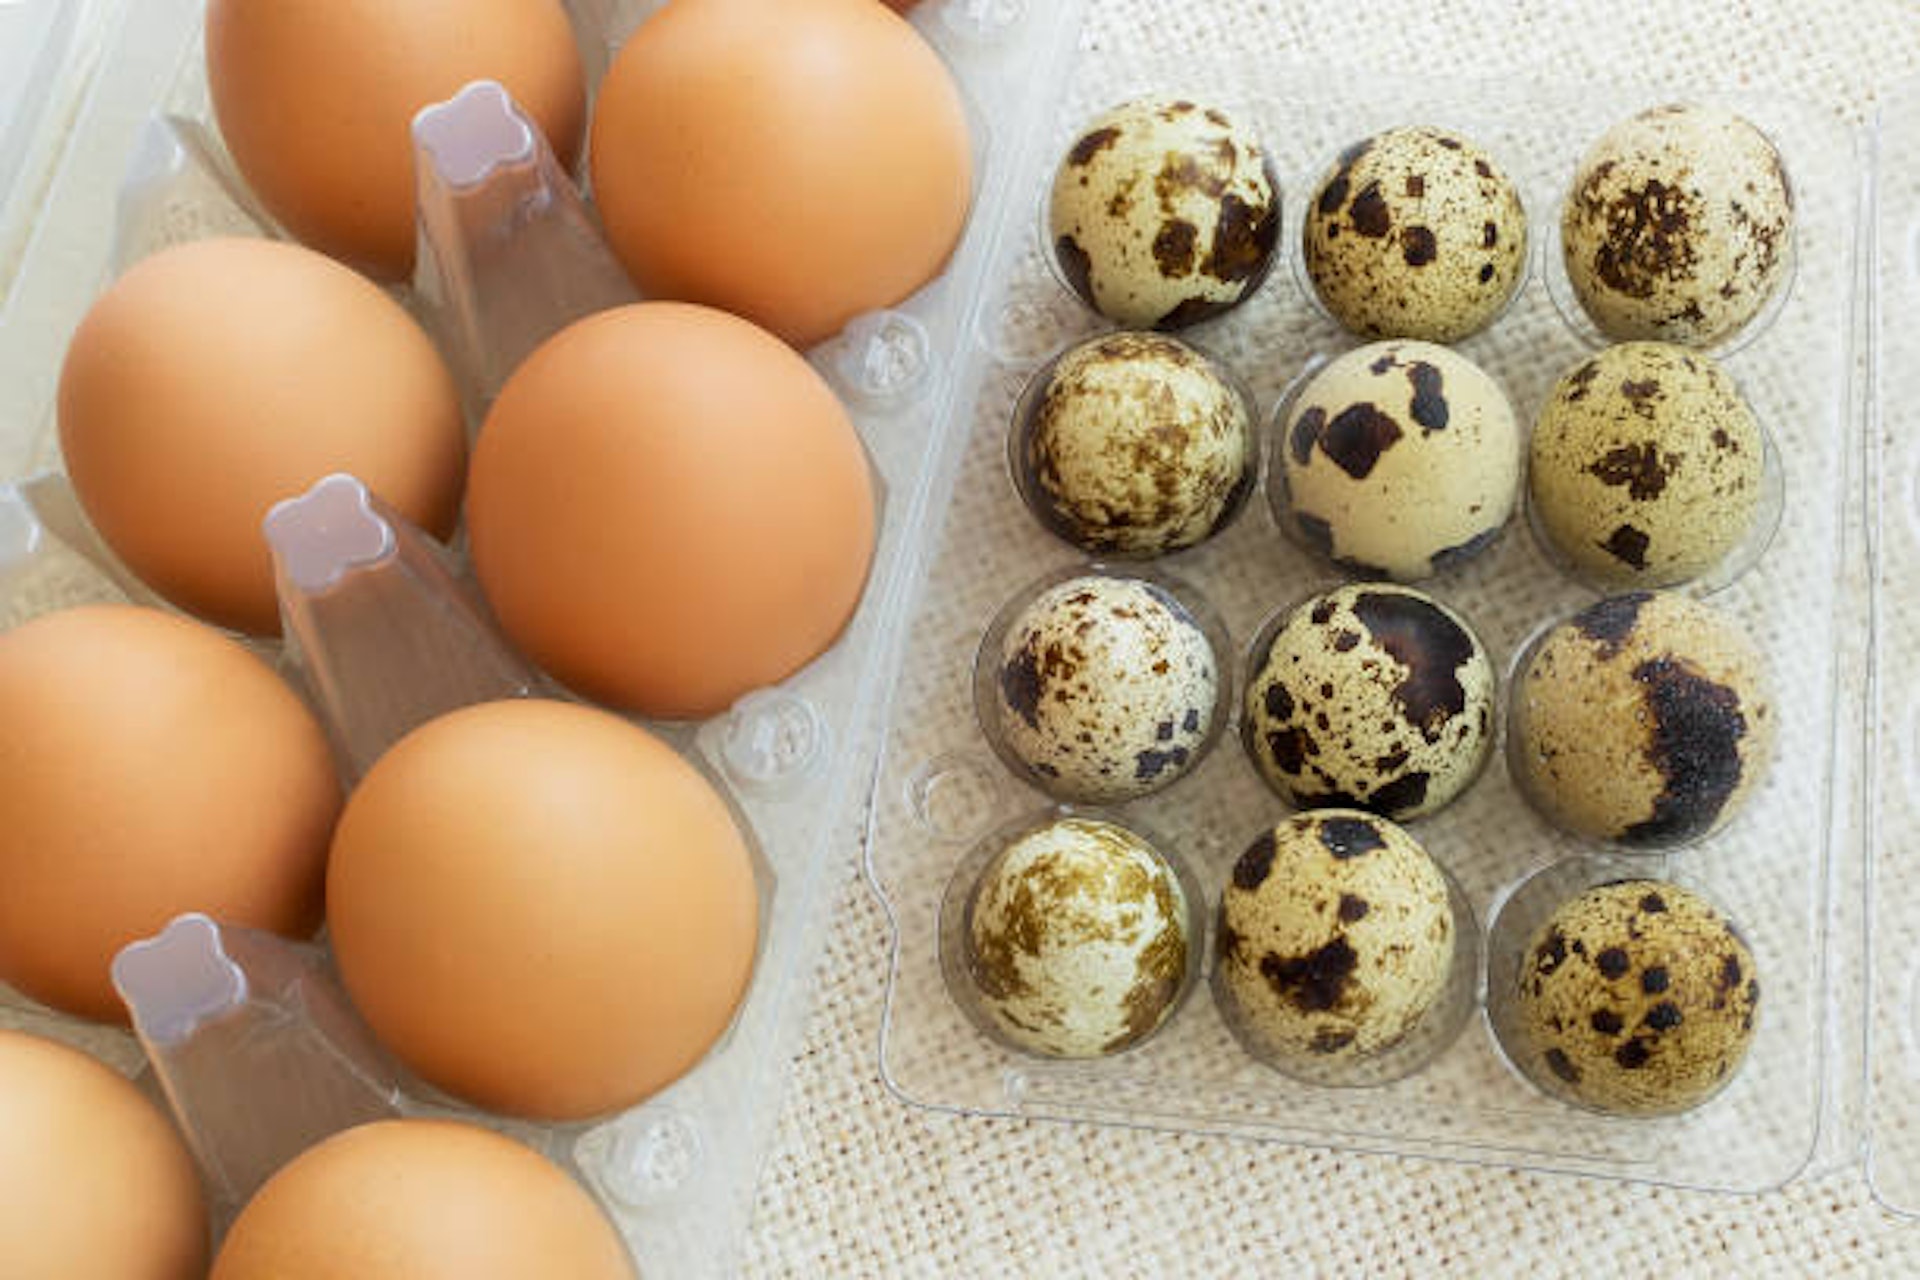 Loại trứng quen giá rẻ có cholesterol thấp hơn trứng gà, tăng gấp 3 lần trao đổi chất và bảo vệ mạch máu hiệu quả - Ảnh 3.